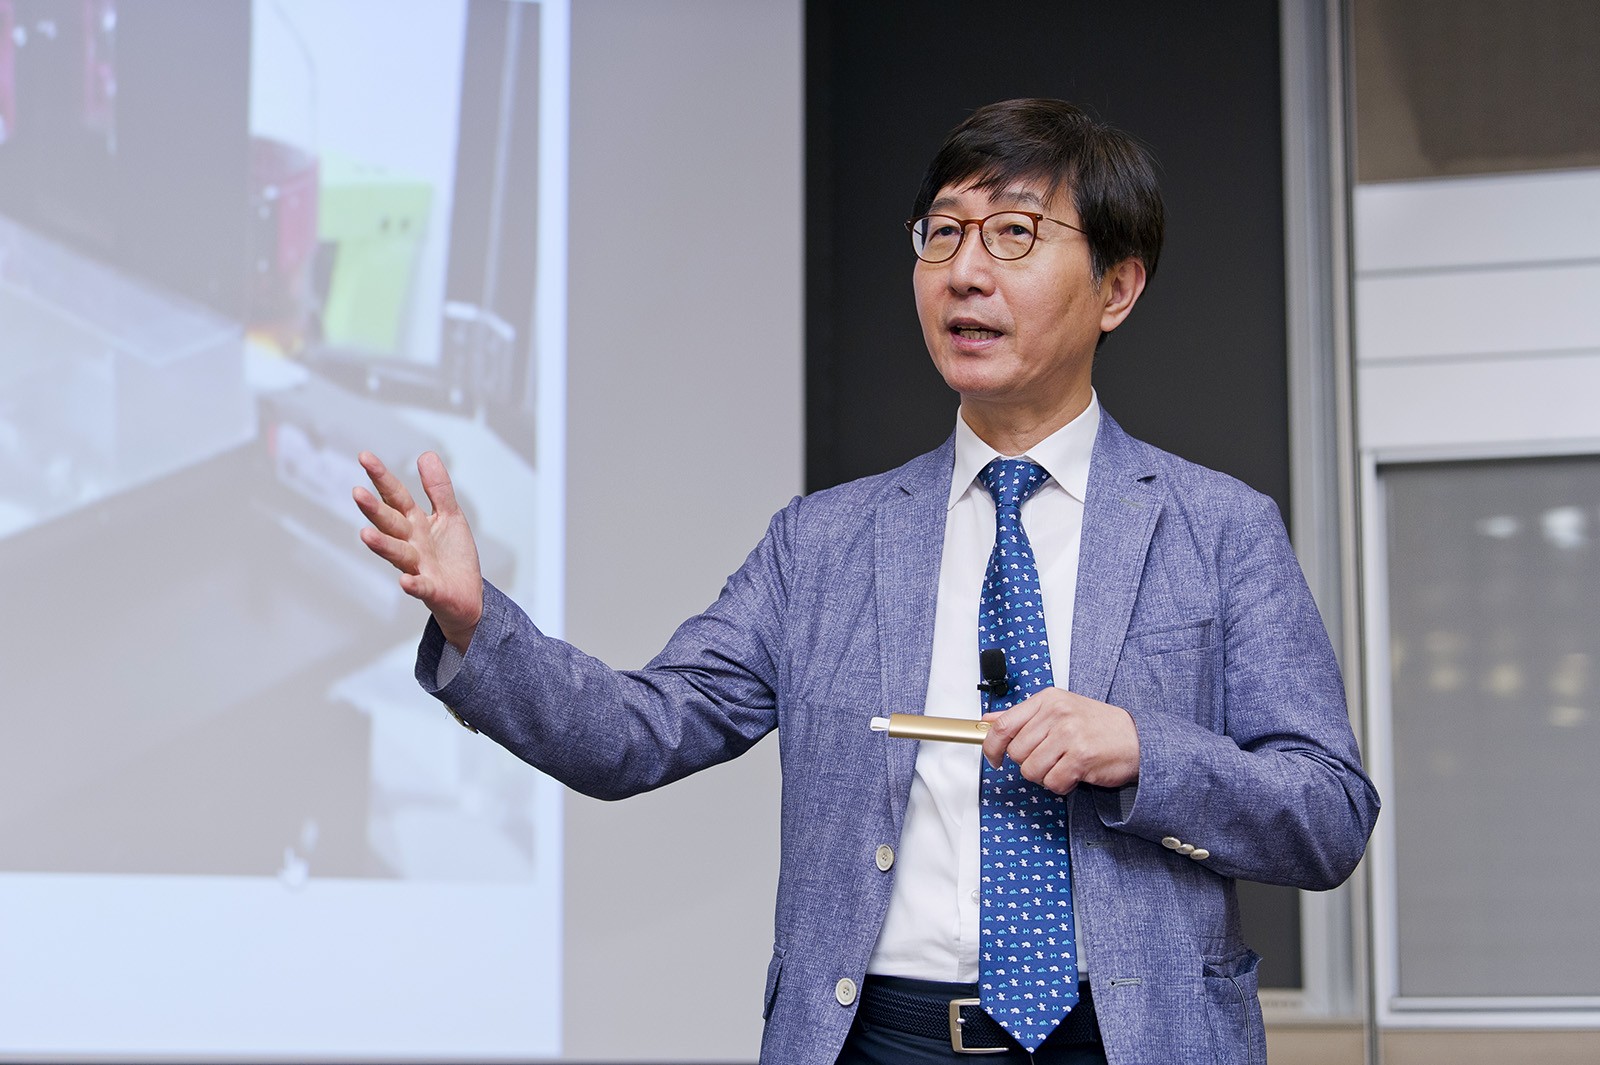 Professor Park Nam-gyu 